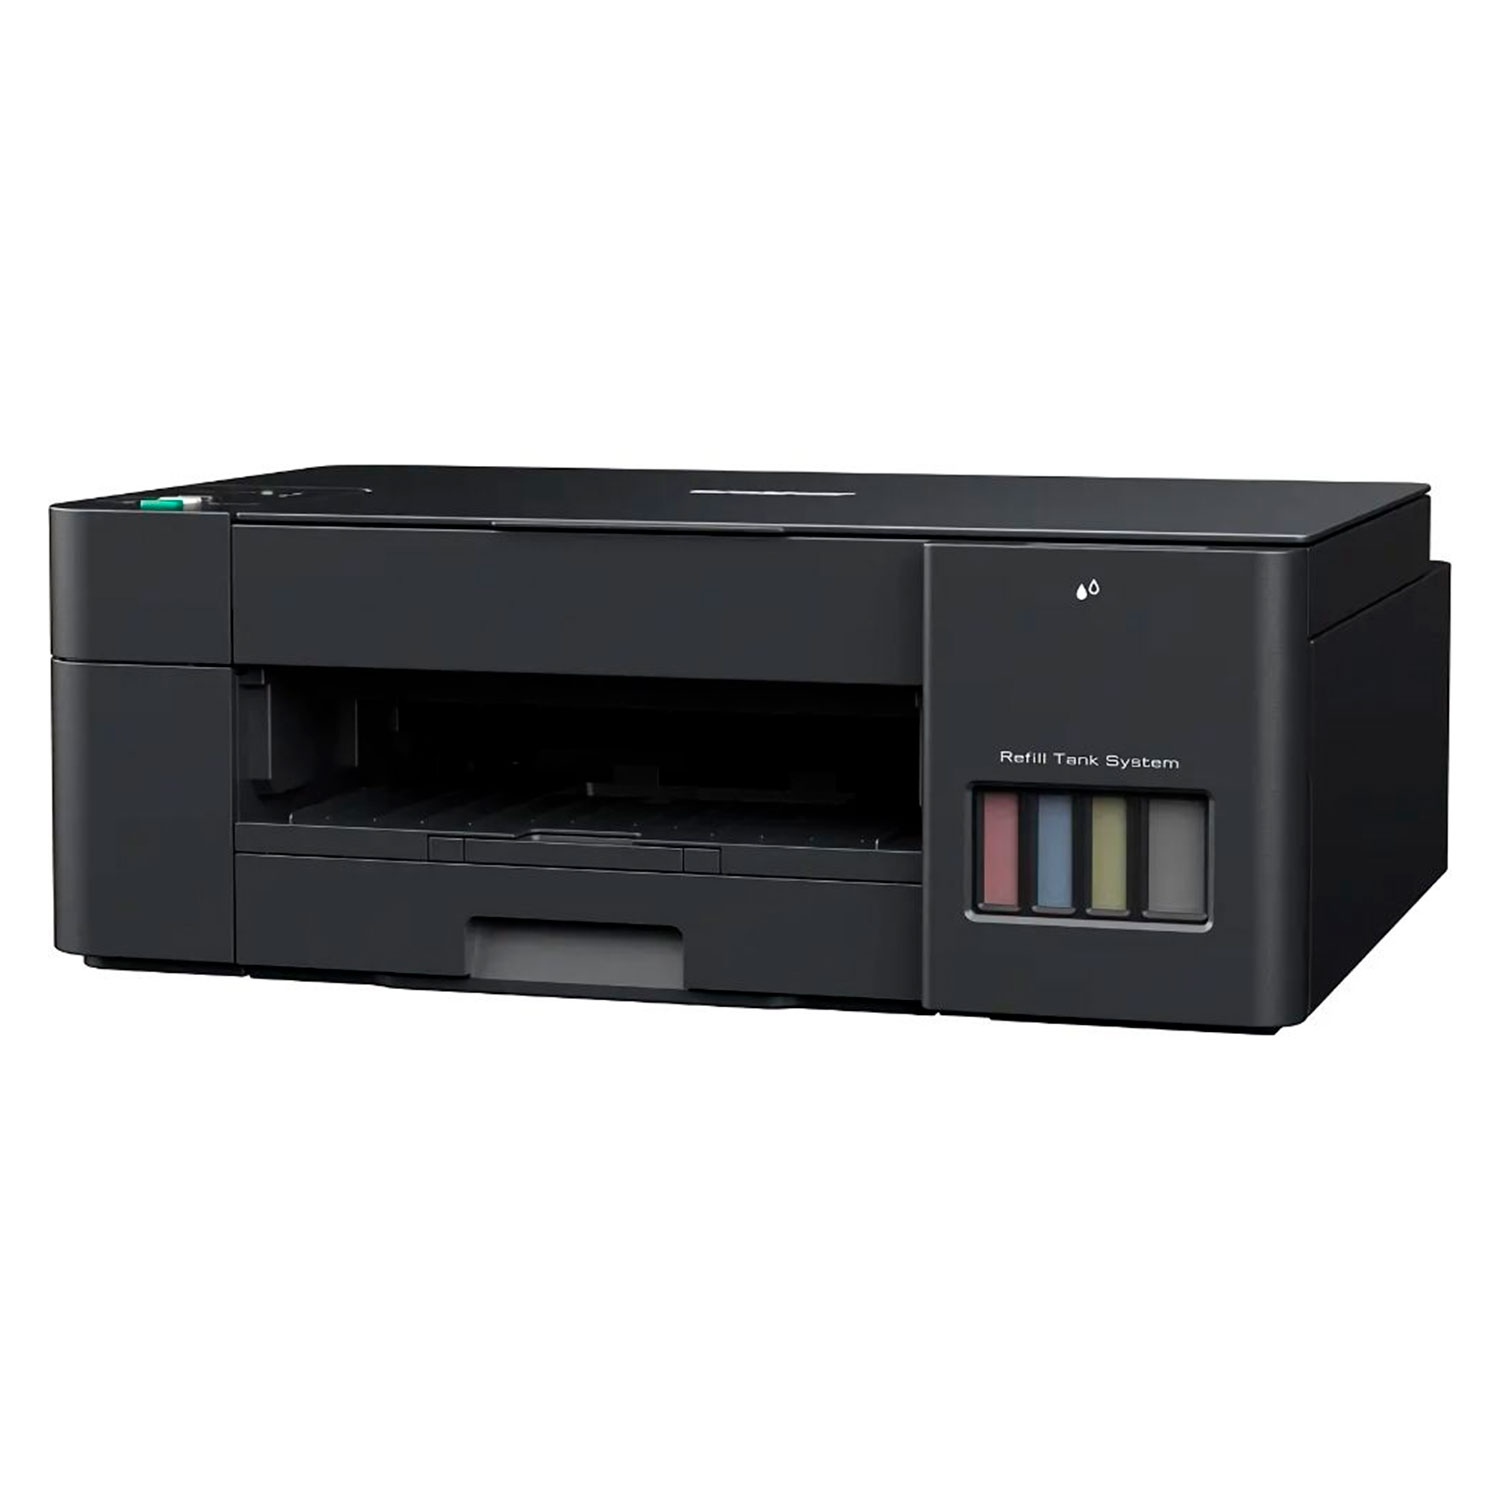 Impressora Multifuncional Brother DCP-T220 220V - Preto
